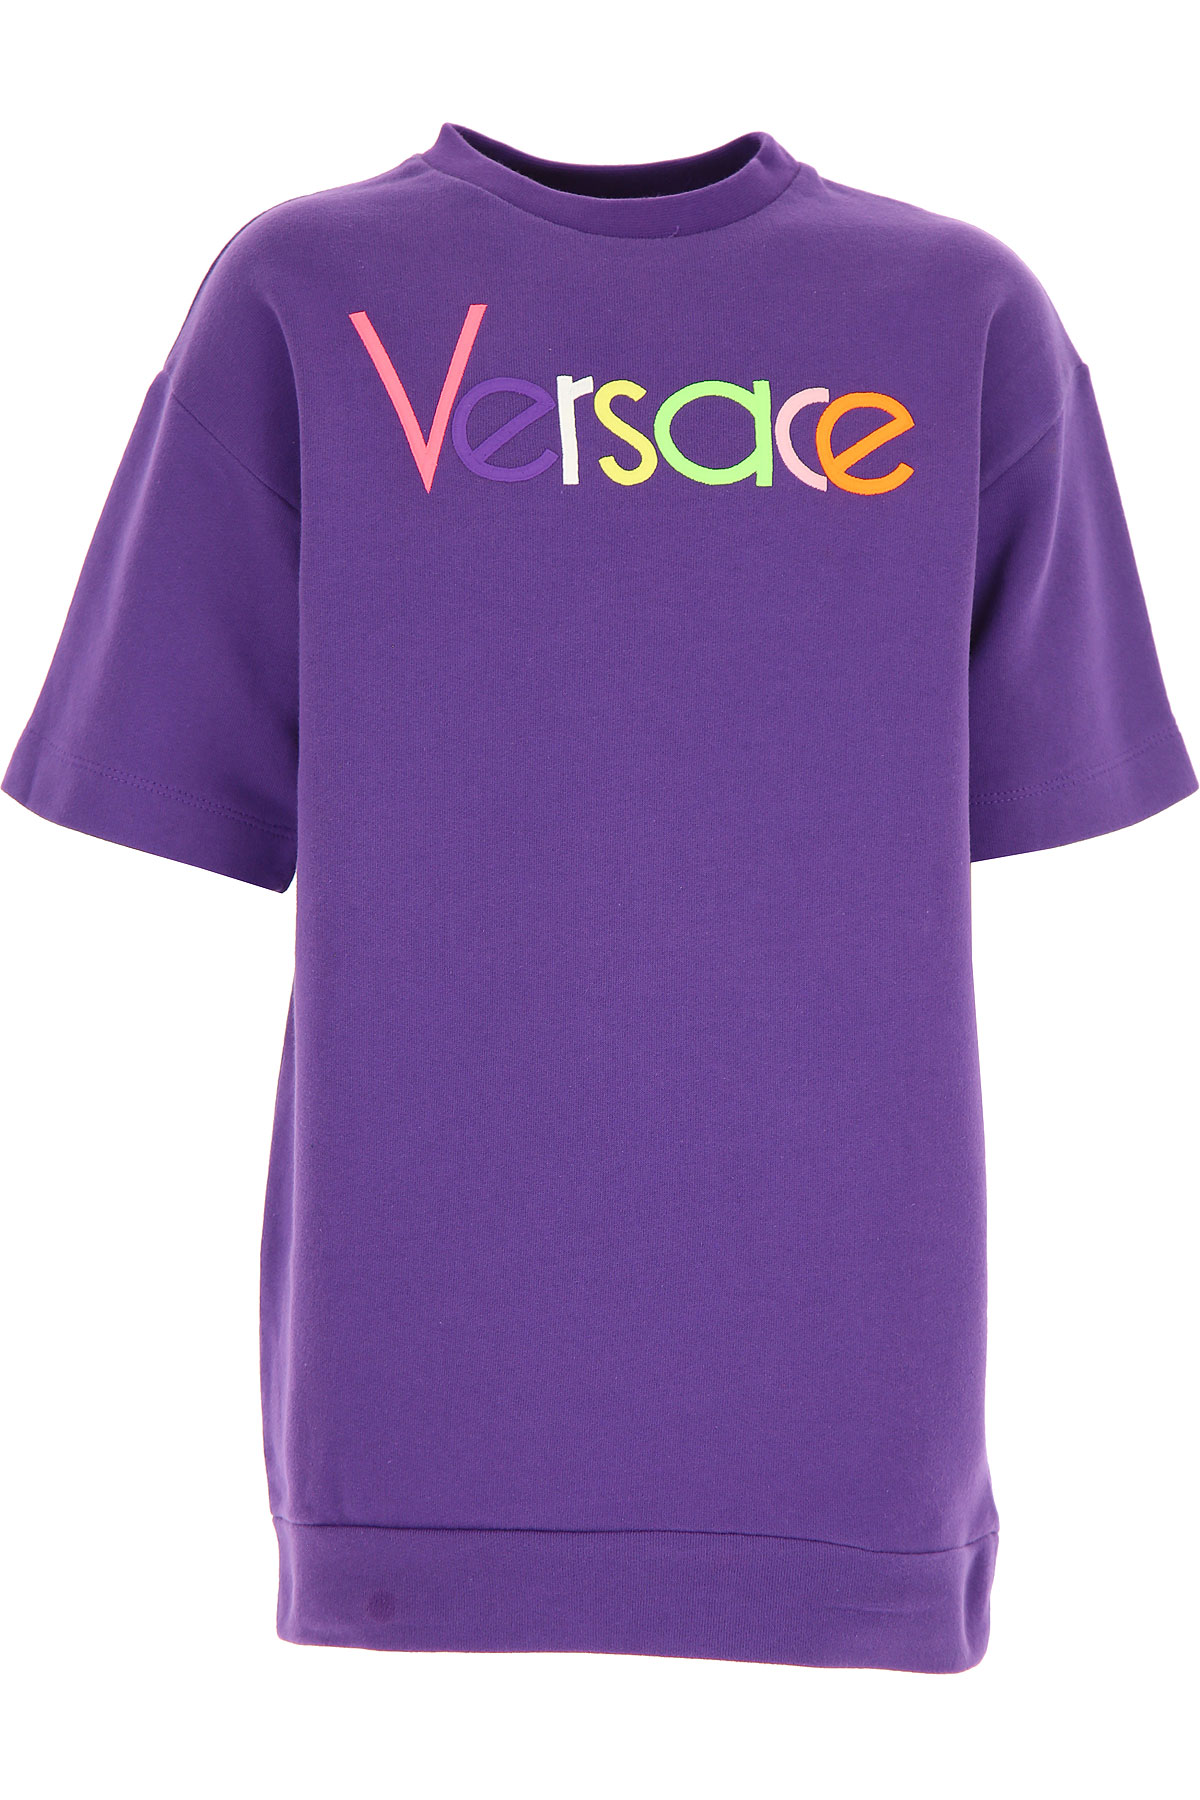 Versace Kleid für Mädchen Günstig im Outlet Sale, Violett, Baumwolle, 2017, 4Y 8Y